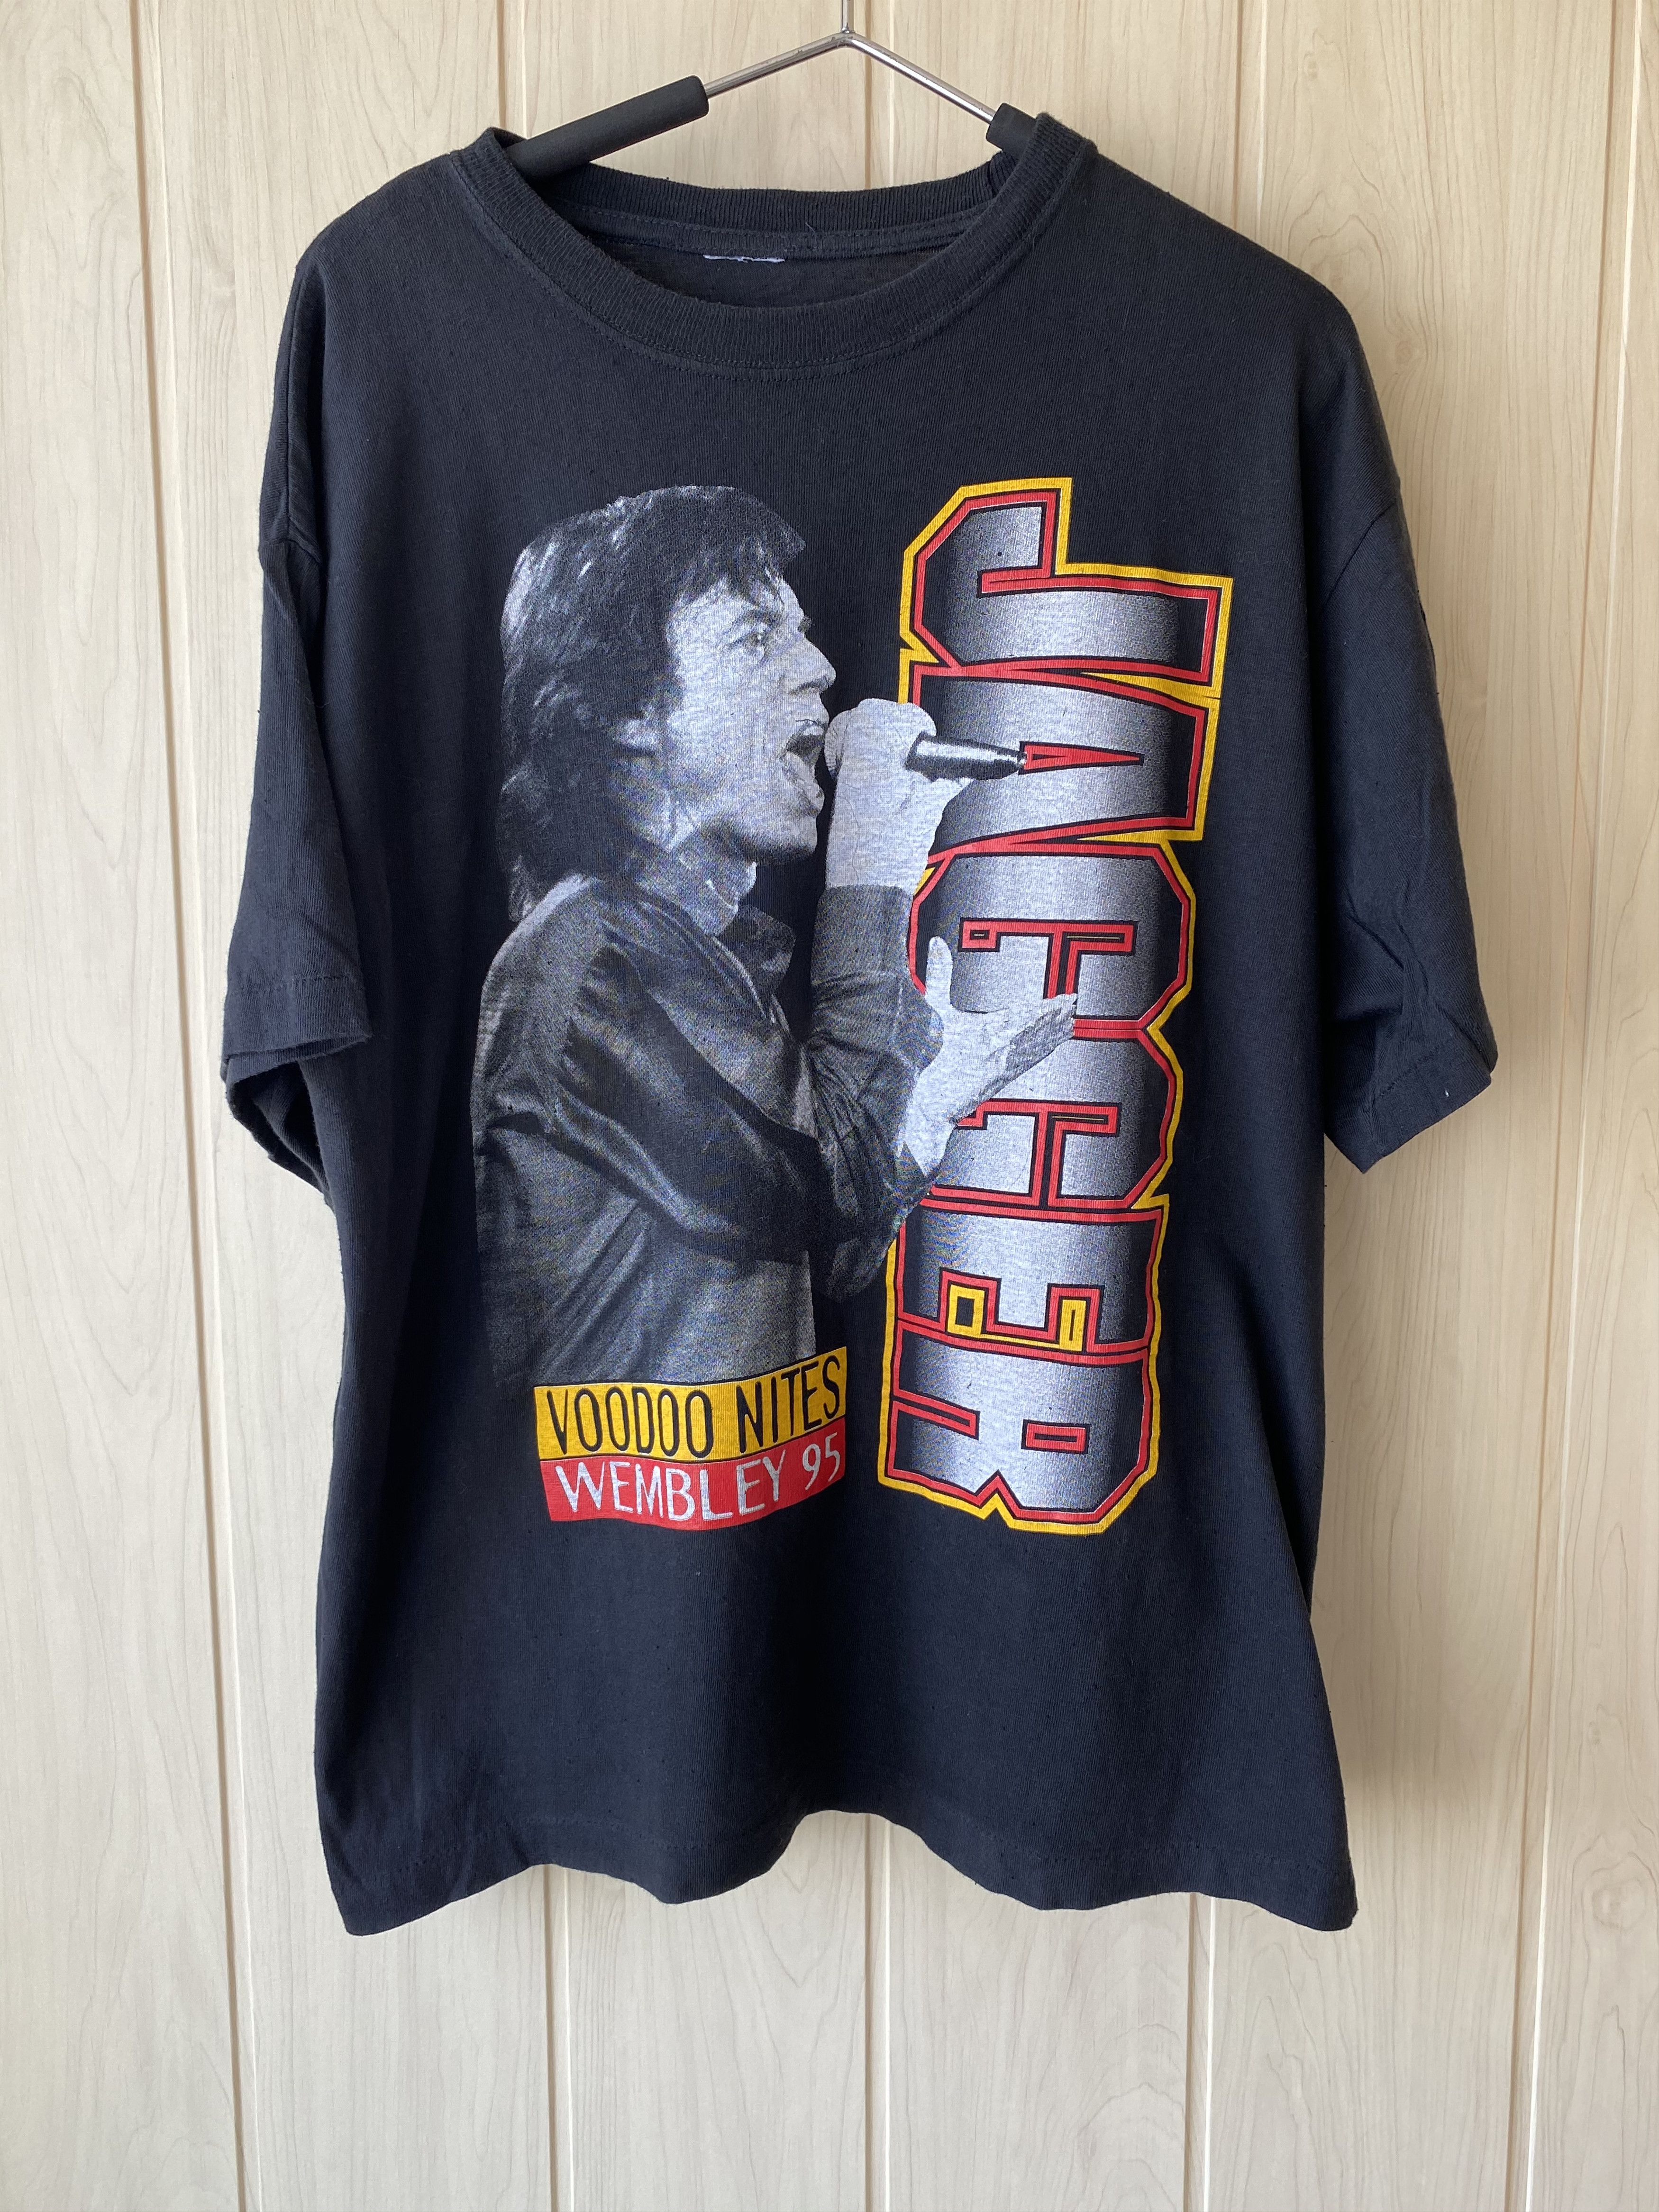 The Rolling Stones Vintage Mick Jagger Voodoo Nites Wembley 1995 Tee Grailed 3691